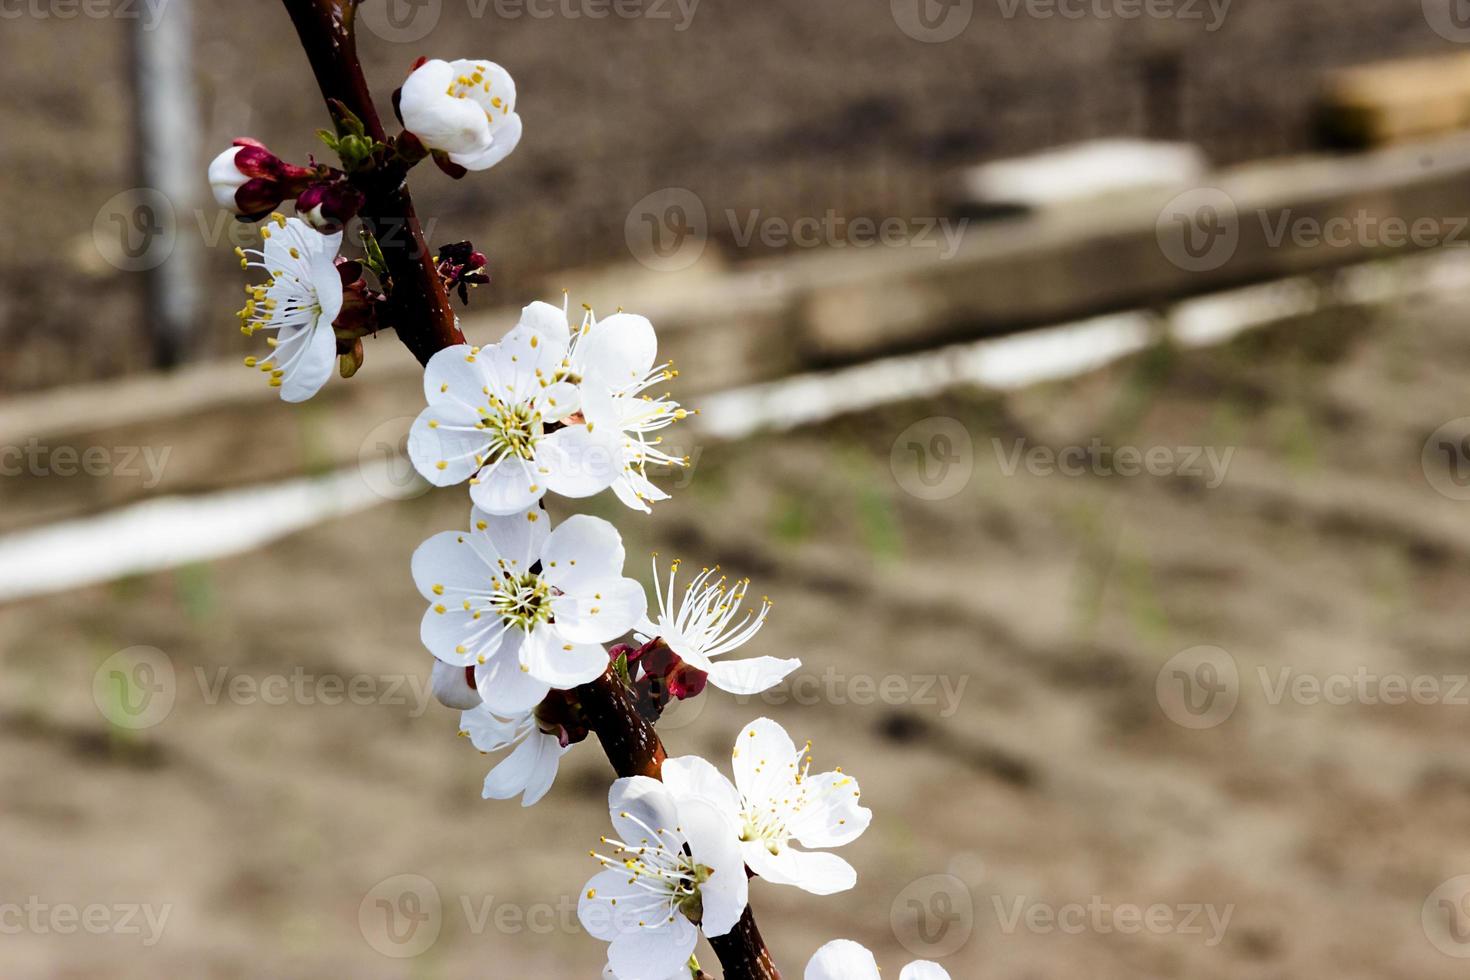 vita blommor och knoppar av ett aprikosträd i vårblomningen foto